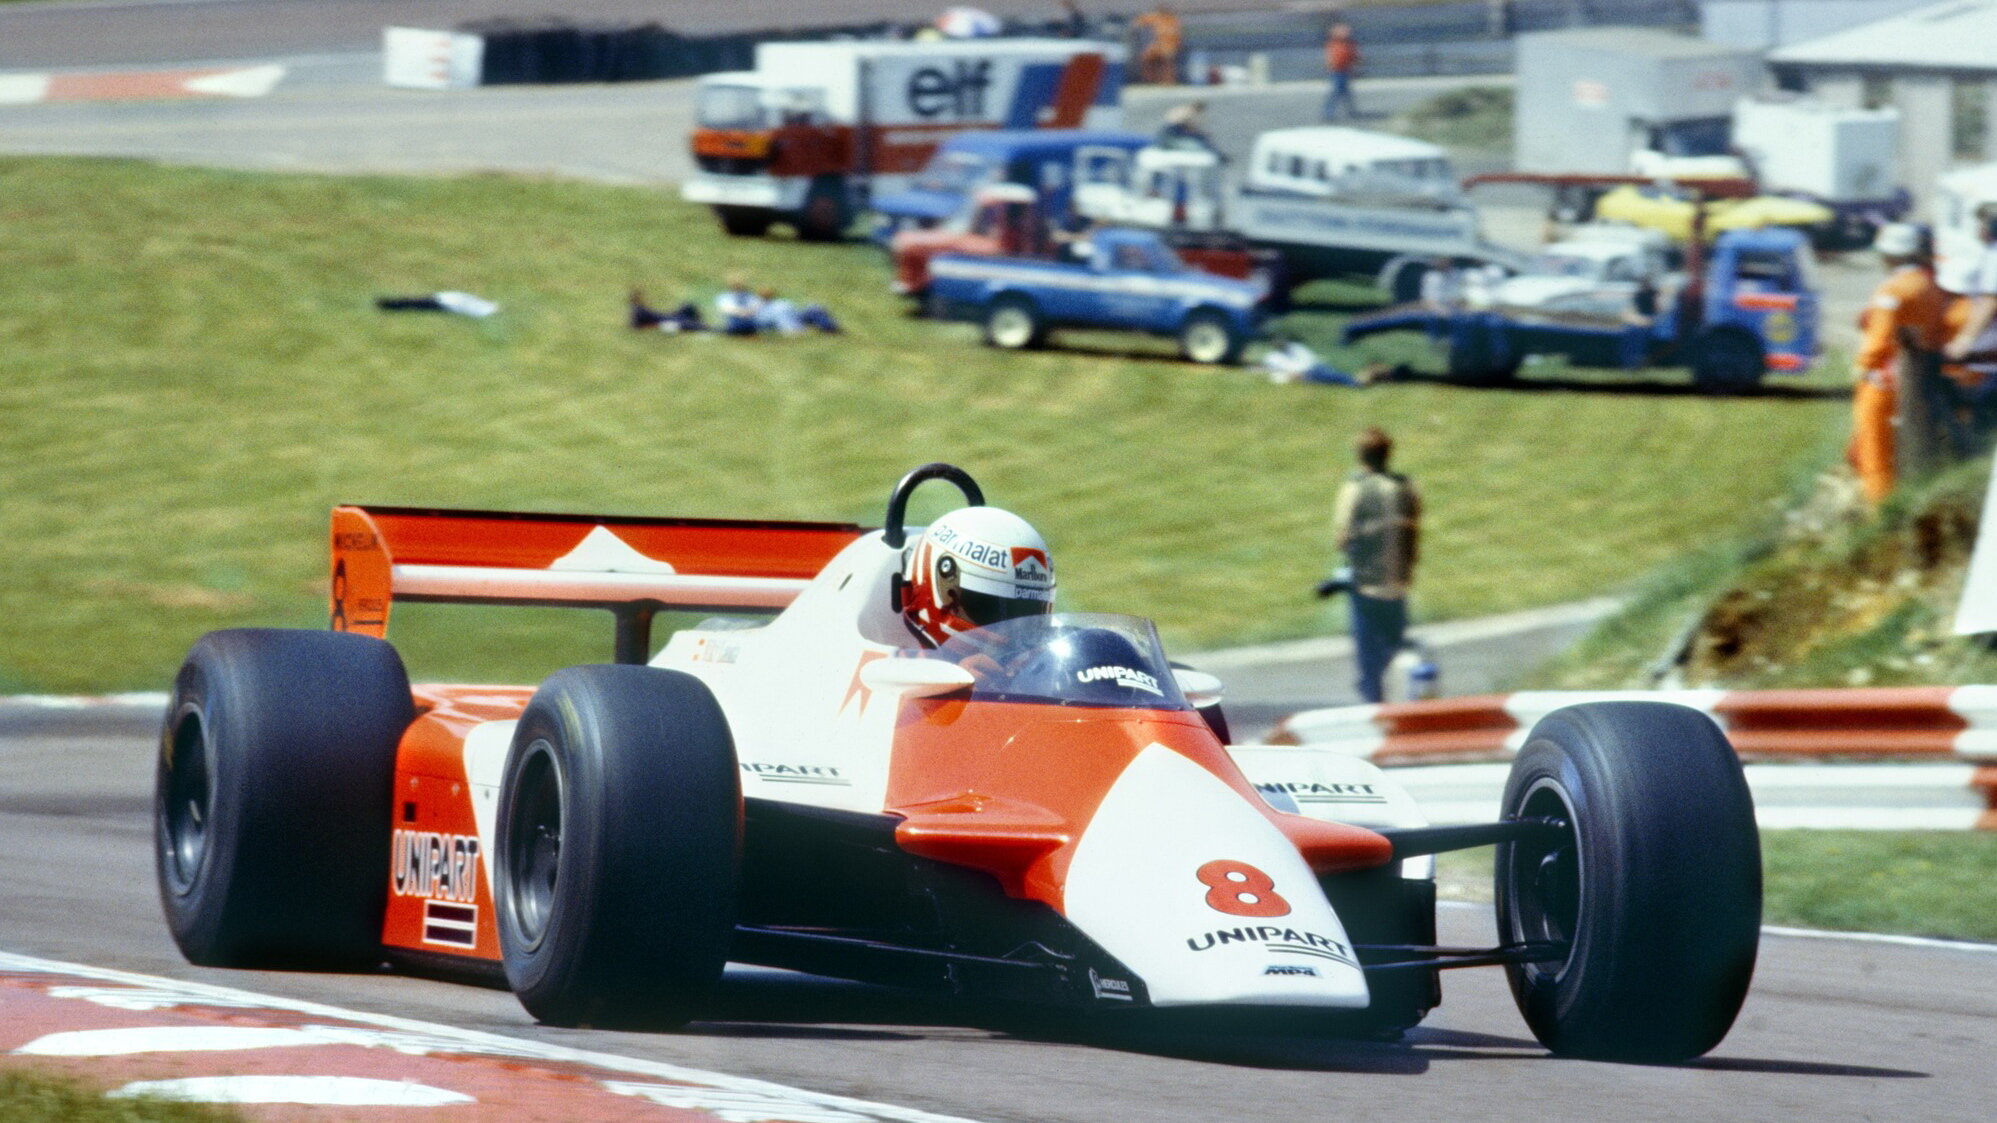 Laudovu éru v McLarenu mohl ukončit přestup k Renaultu